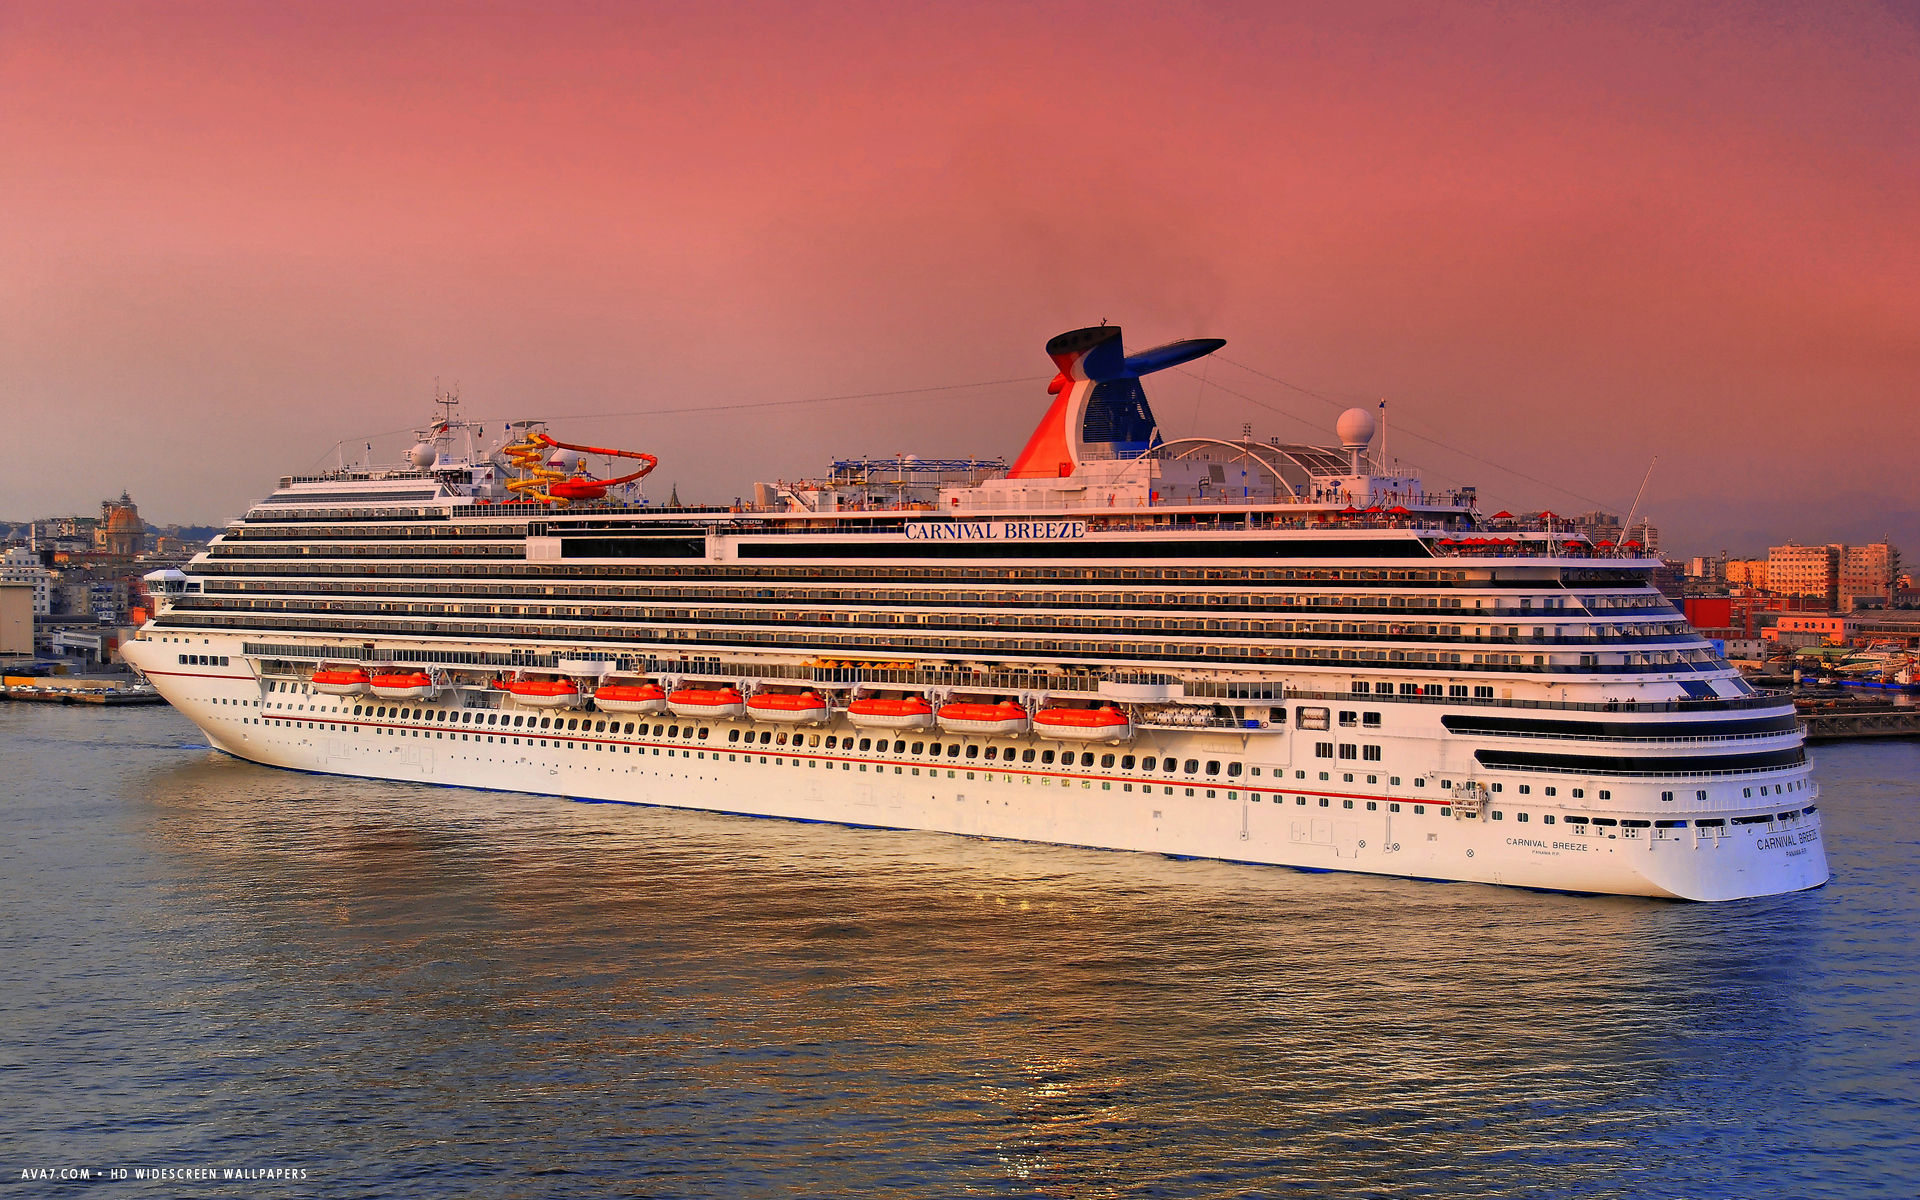 carnival breeze cruise ship hd widescreen wallpaper cruise ships